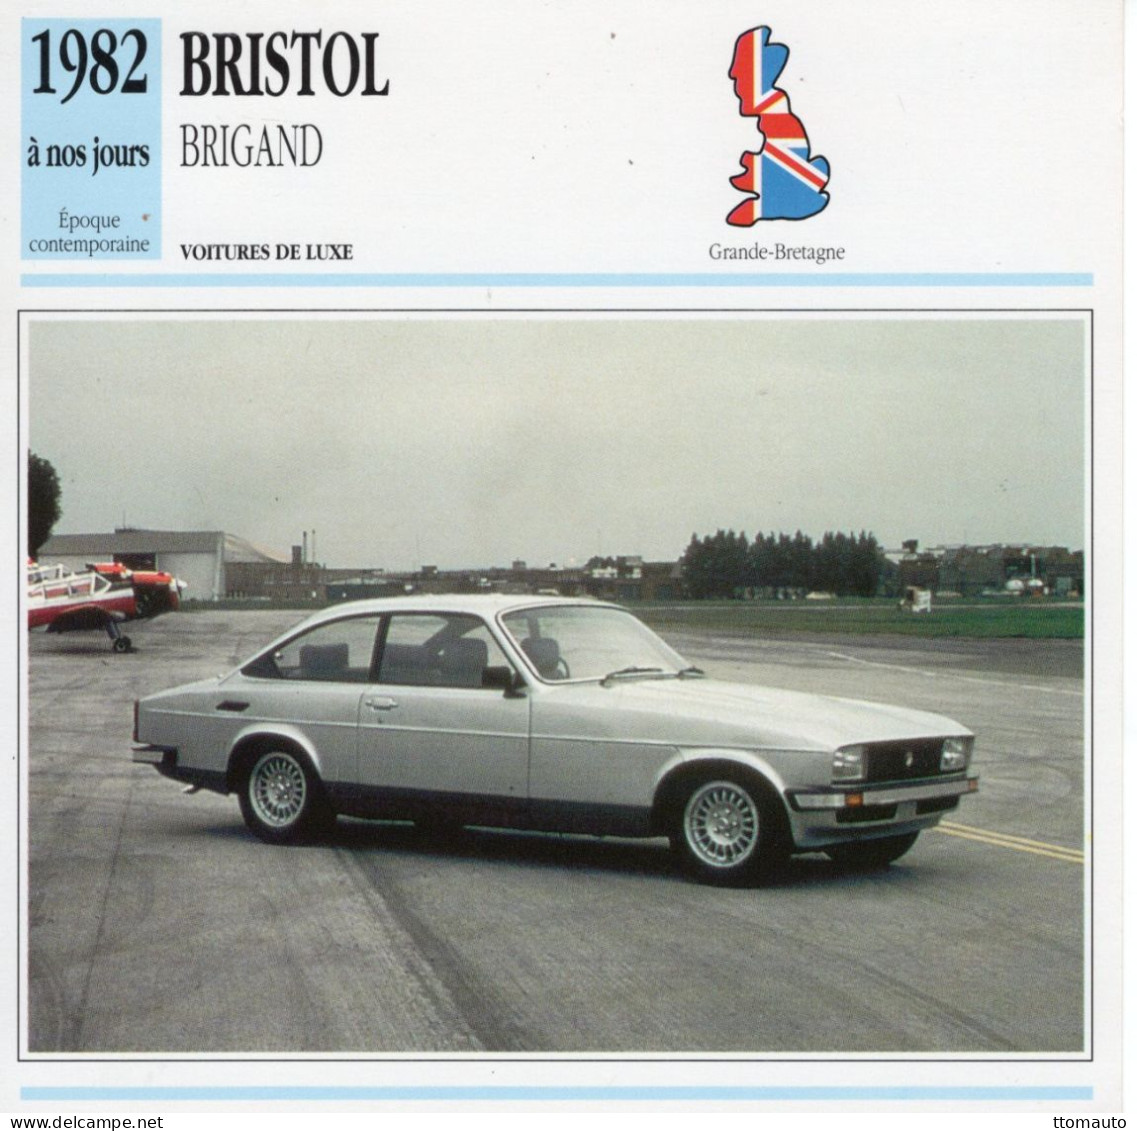 Bristol Brigand  -  1982  - Voiture De Luxe -  Fiche Technique Automobile (GB) - Auto's